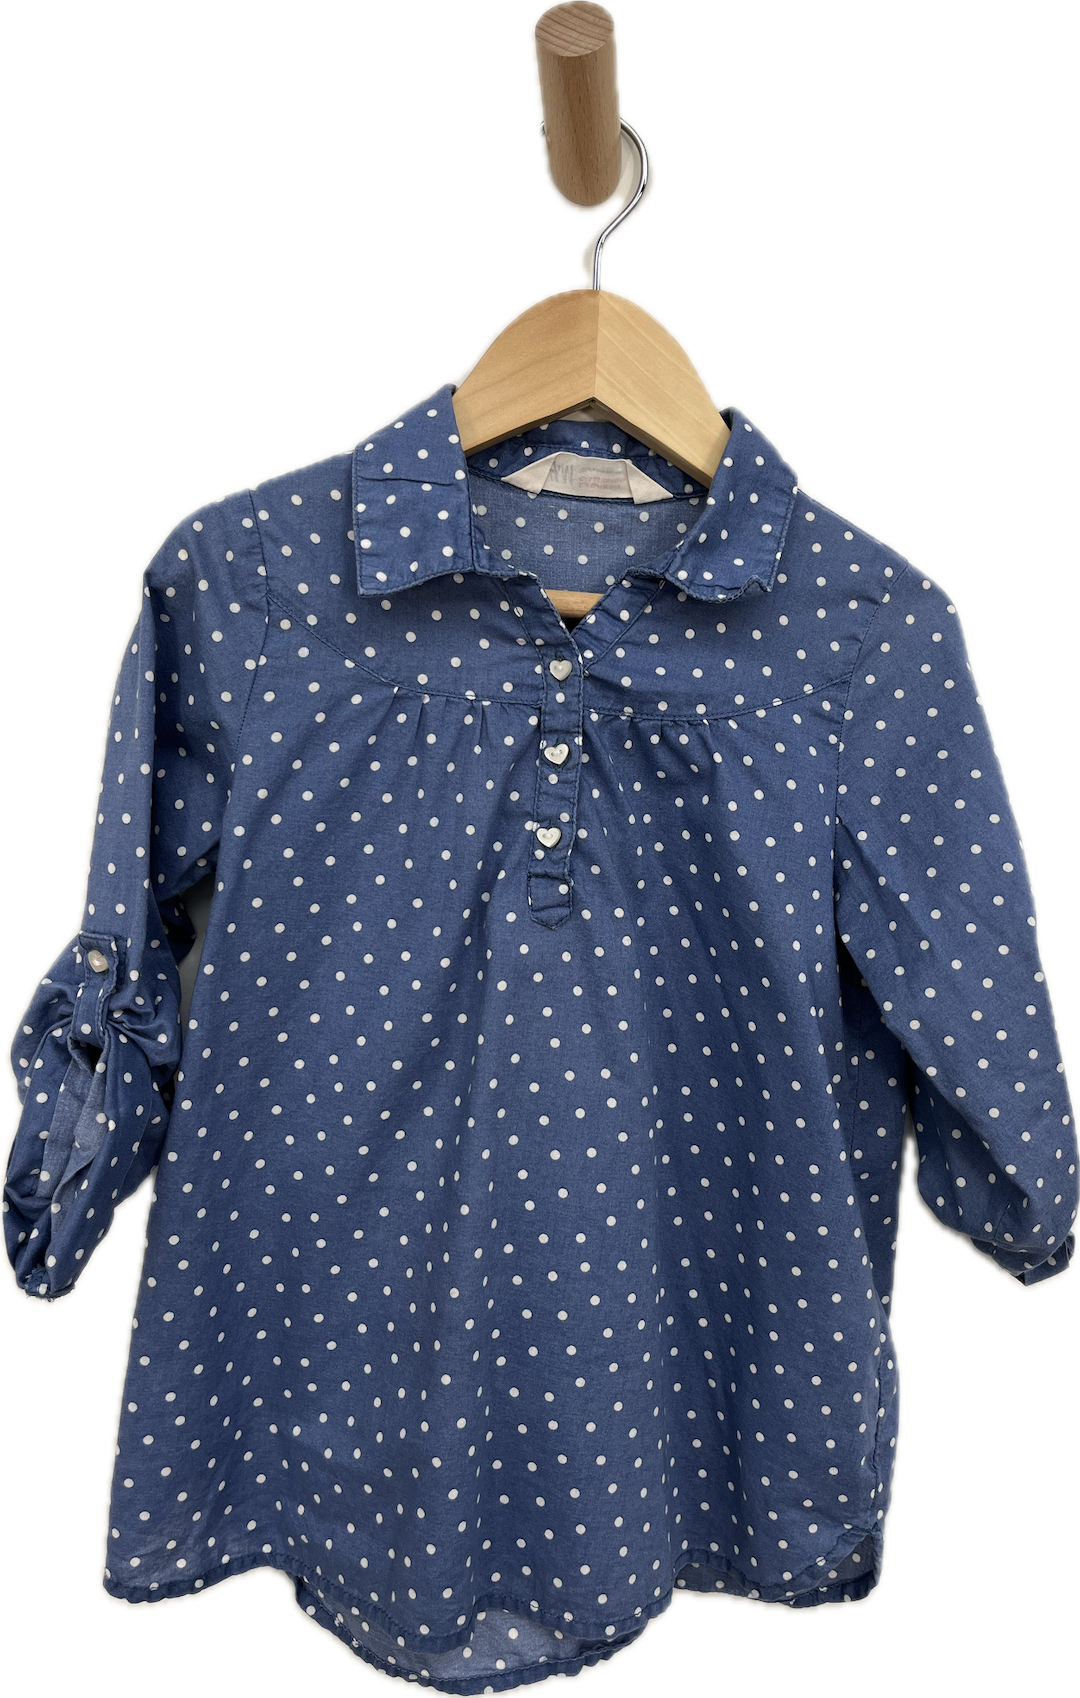 h&m mauve blue polka dot blouse dress 3T